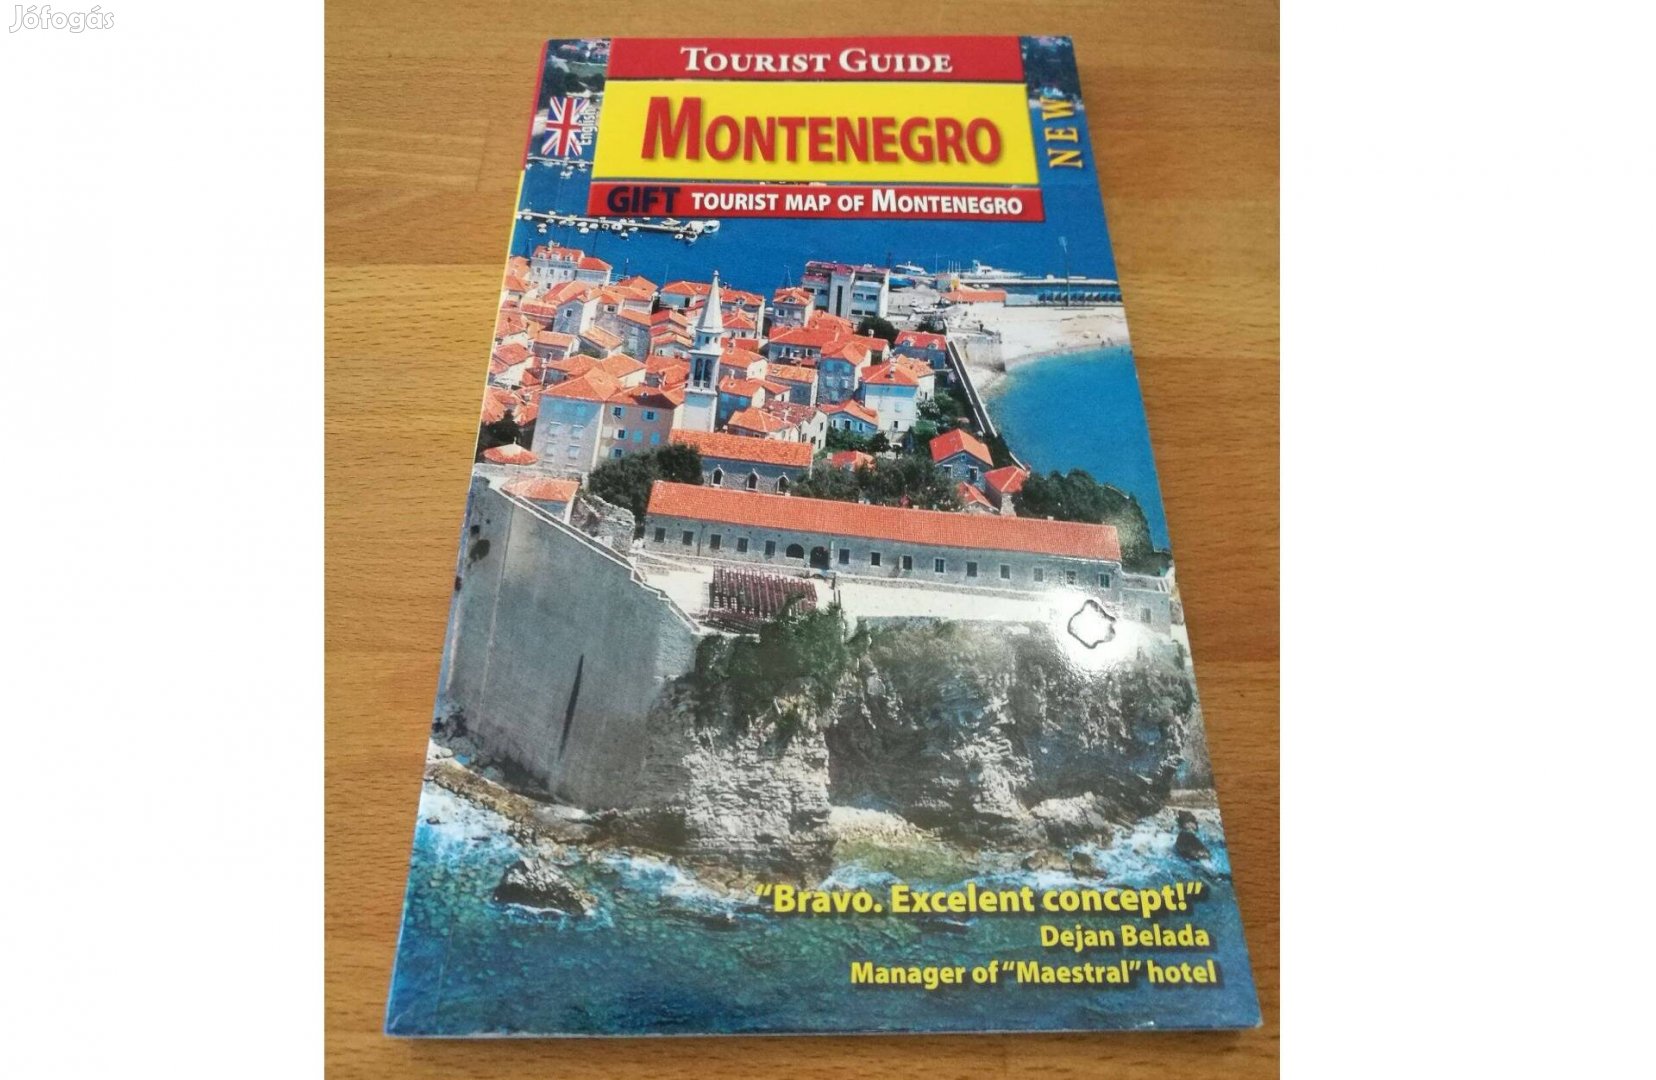 Tourist Guide: Montenegro - útikönyv térképpel, használt,szép állapotú